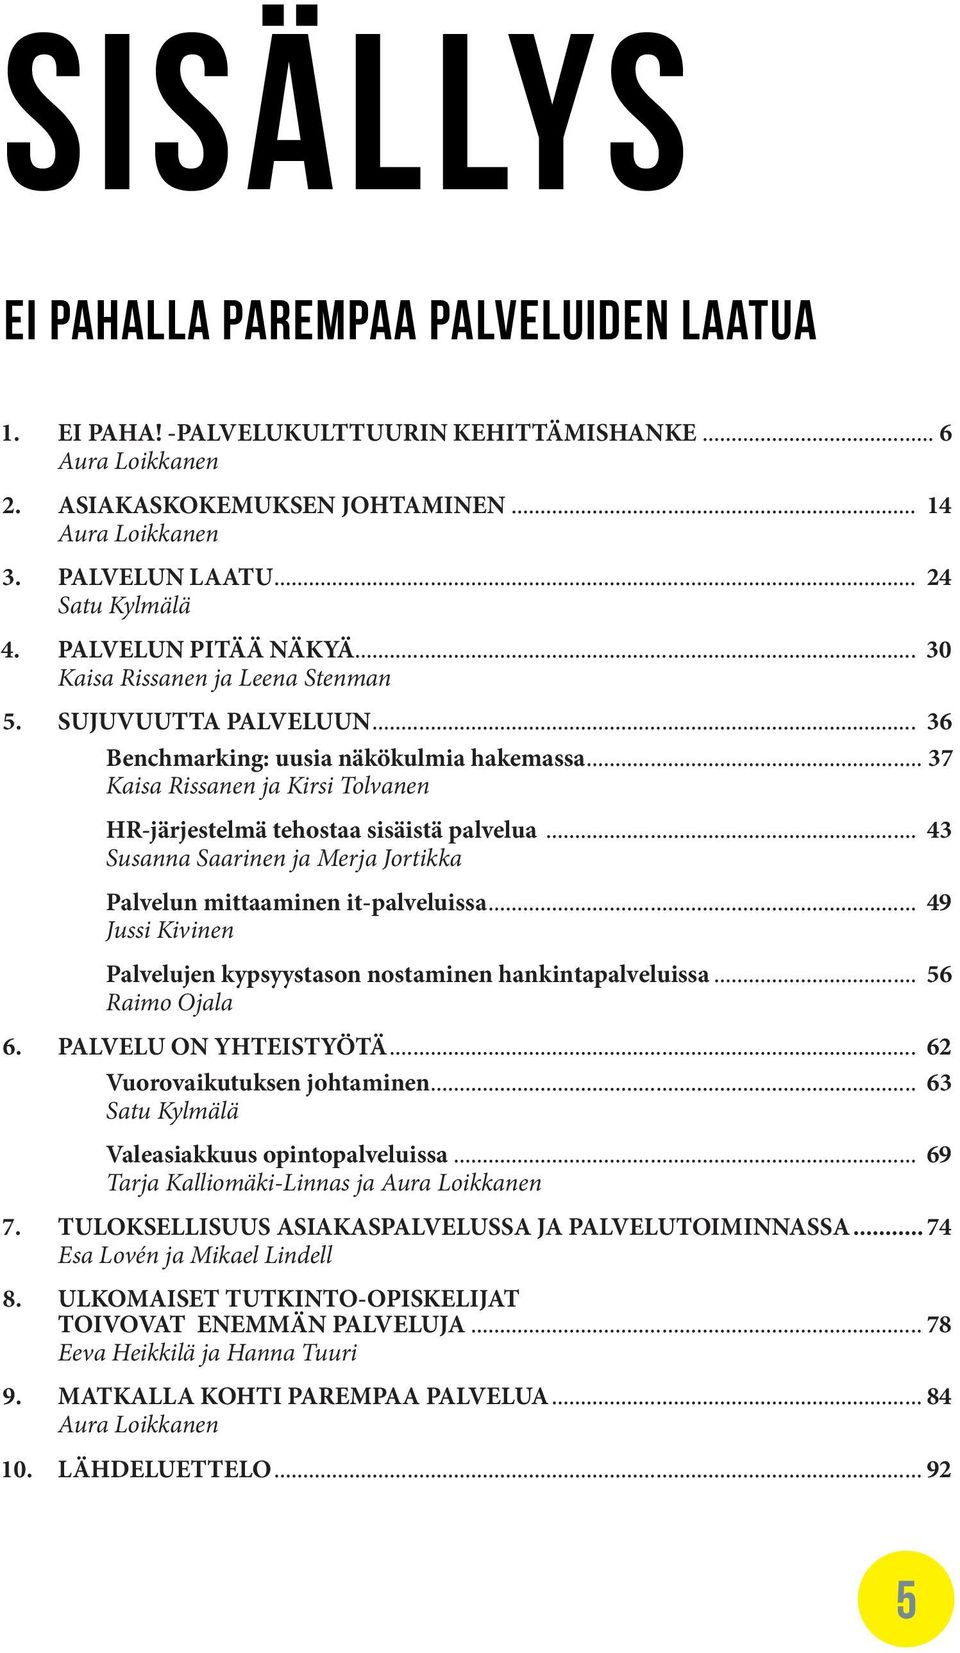 .. 37 Kaisa Rissanen ja Kirsi Tolvanen HR-järjestelmä tehostaa sisäistä palvelua... 43 Susanna Saarinen ja Merja Jortikka Palvelun mittaaminen it-palveluissa.